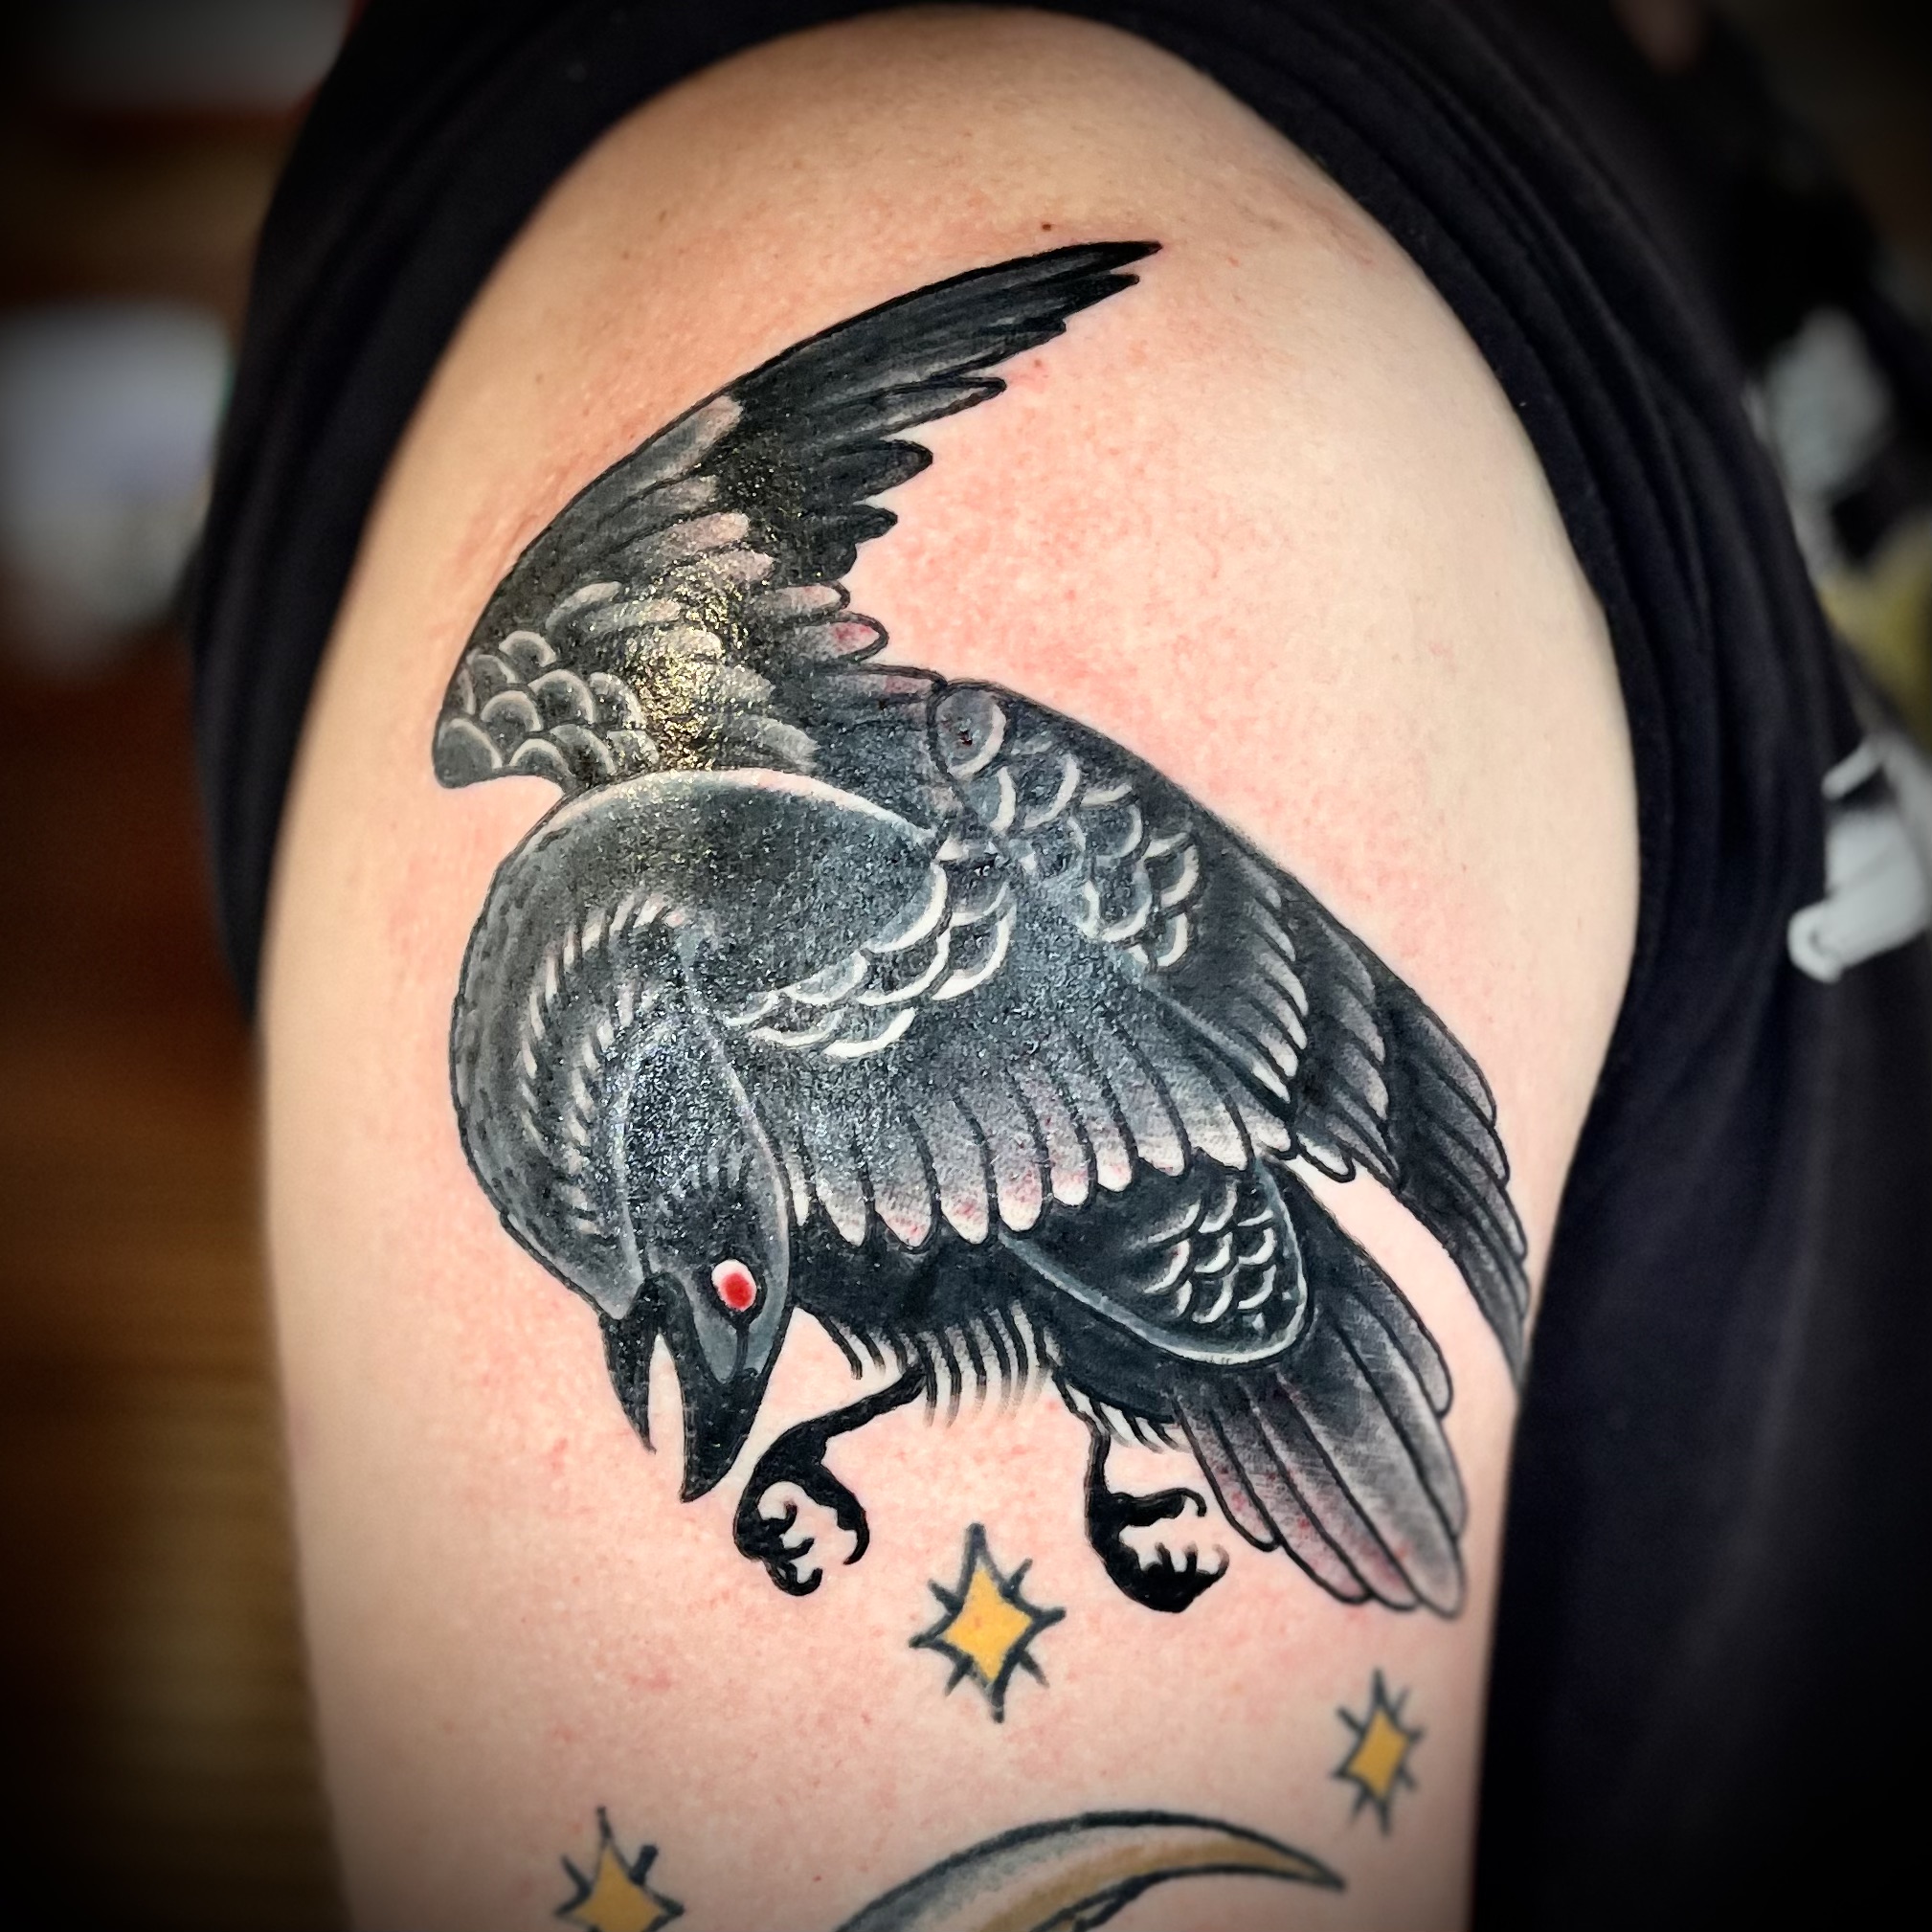 Tattoo of a blackbird from best tattoo shops in dallas tx